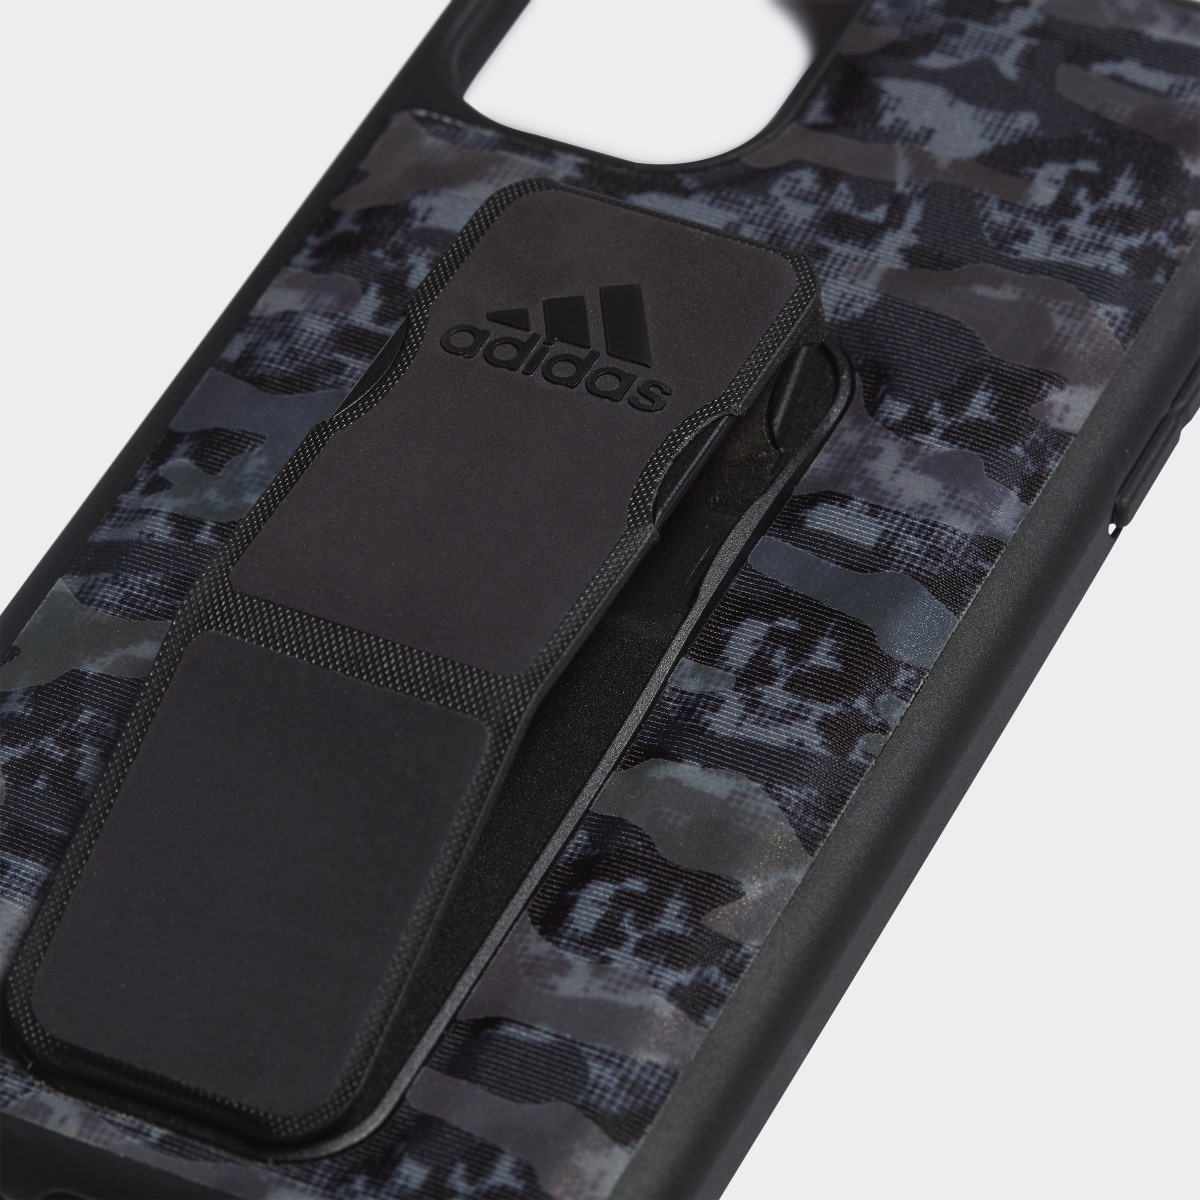 Adidas Grip Case iPhone 11. 6